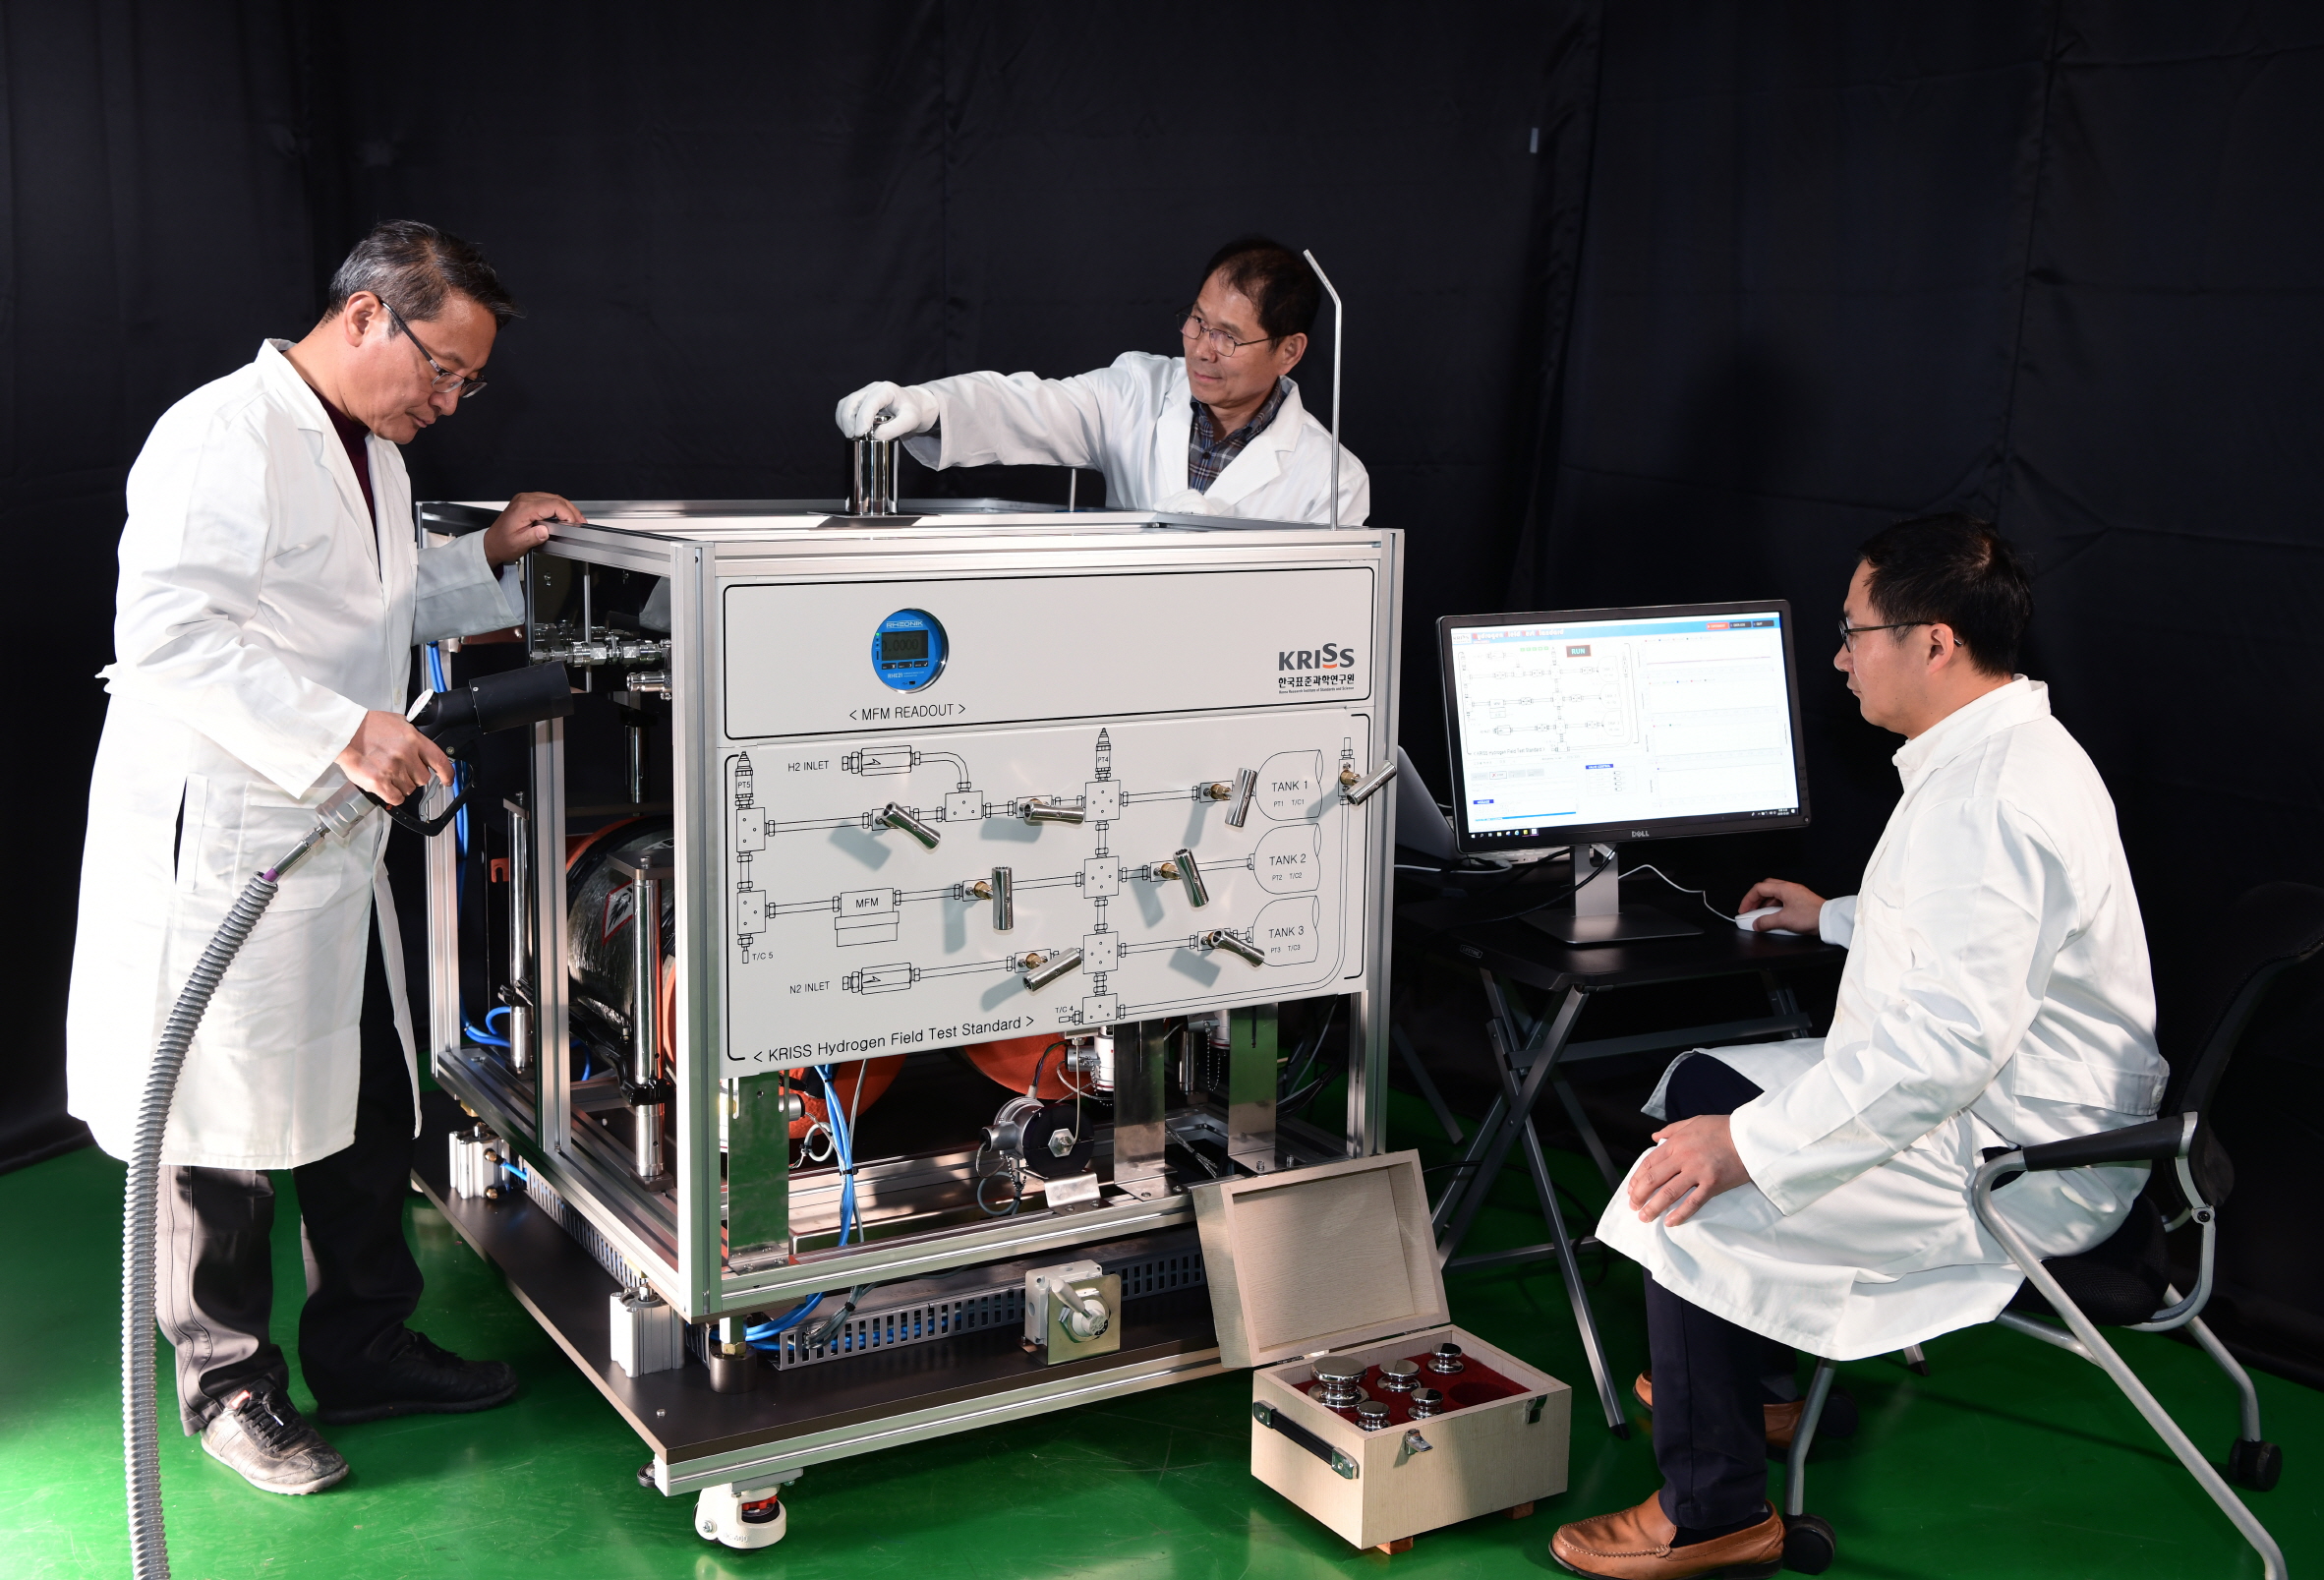 한국표준과학연구원은 수소충전소에서 정량의 수소가 충전될 수 있도록 유량계를 검증하는 교정시스템을 개발하는 데 성공했다고 밝혔다. <사진=한국표준과학연구원 제공>